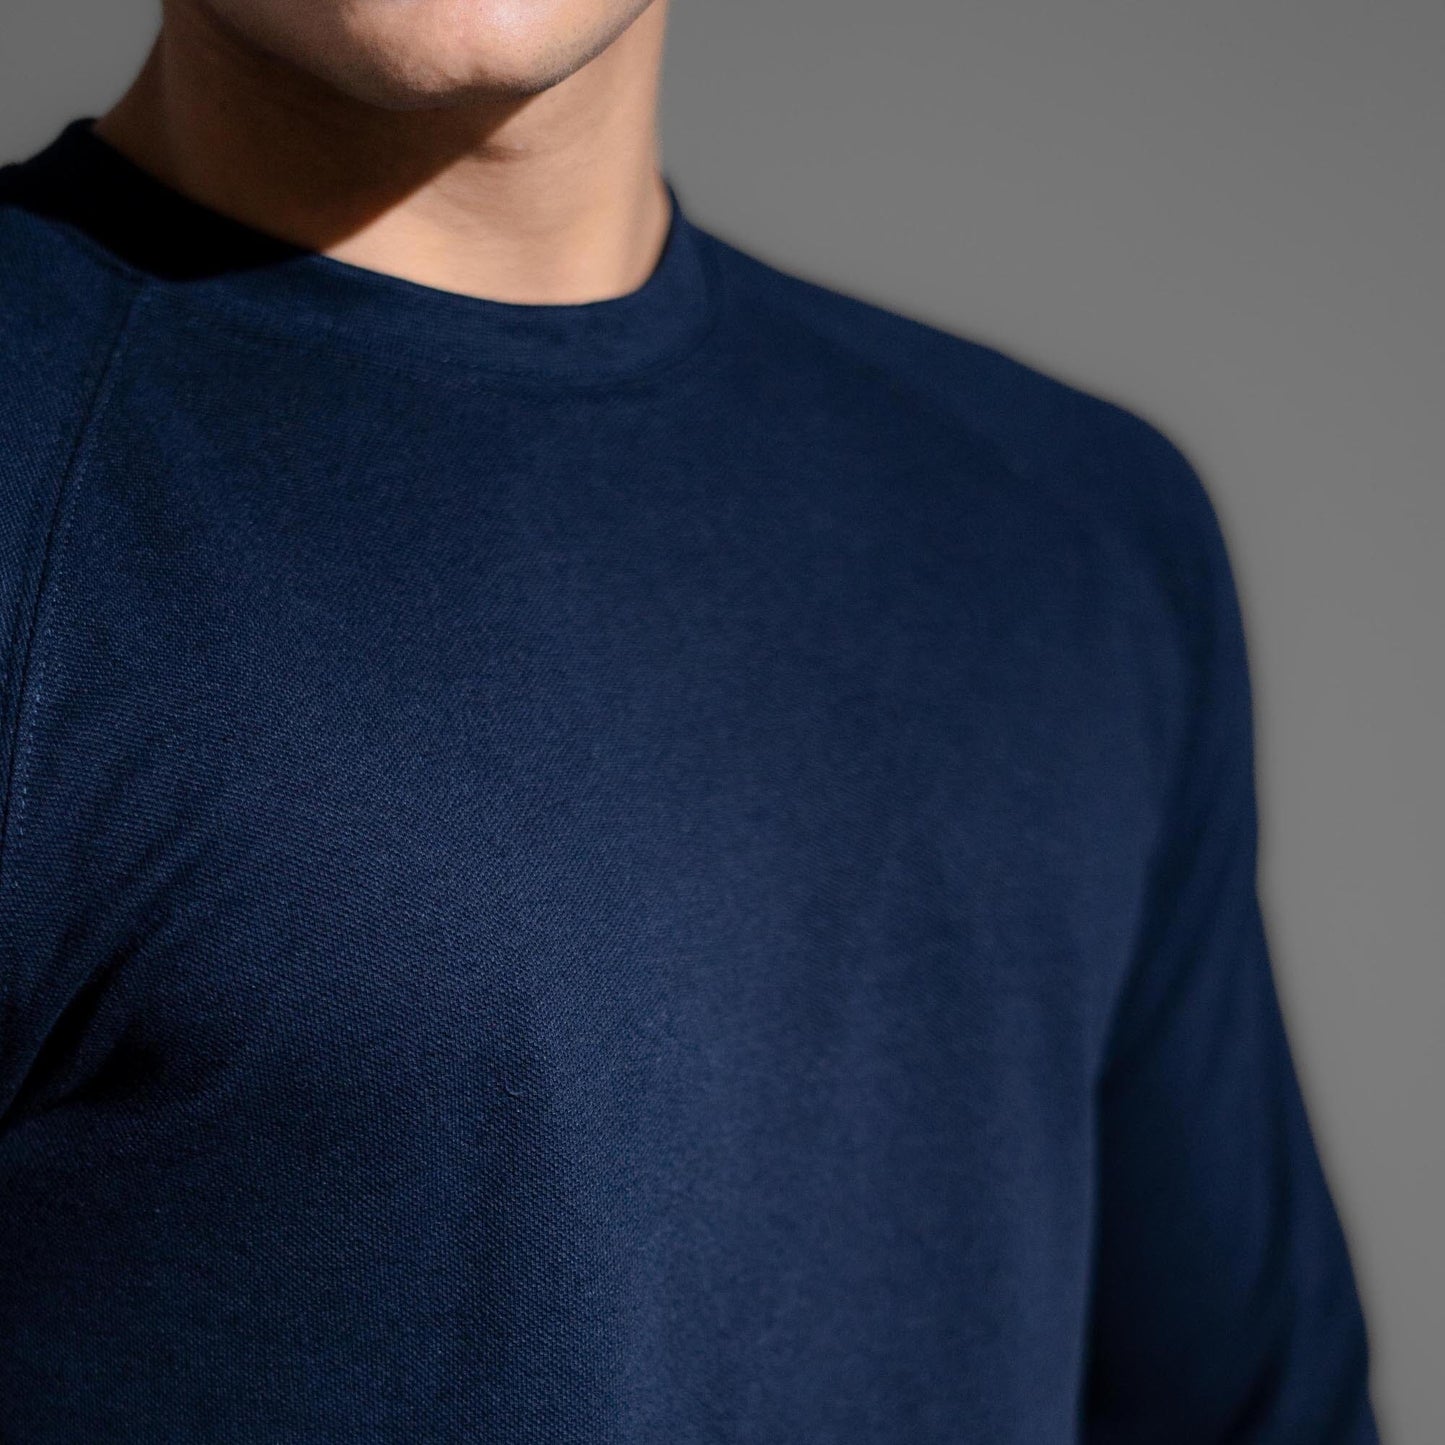 Polo Republica Men's Essentials Raglan Long Sleeve Pique Tee Shirt Men's Tee Shirt Polo Republica 